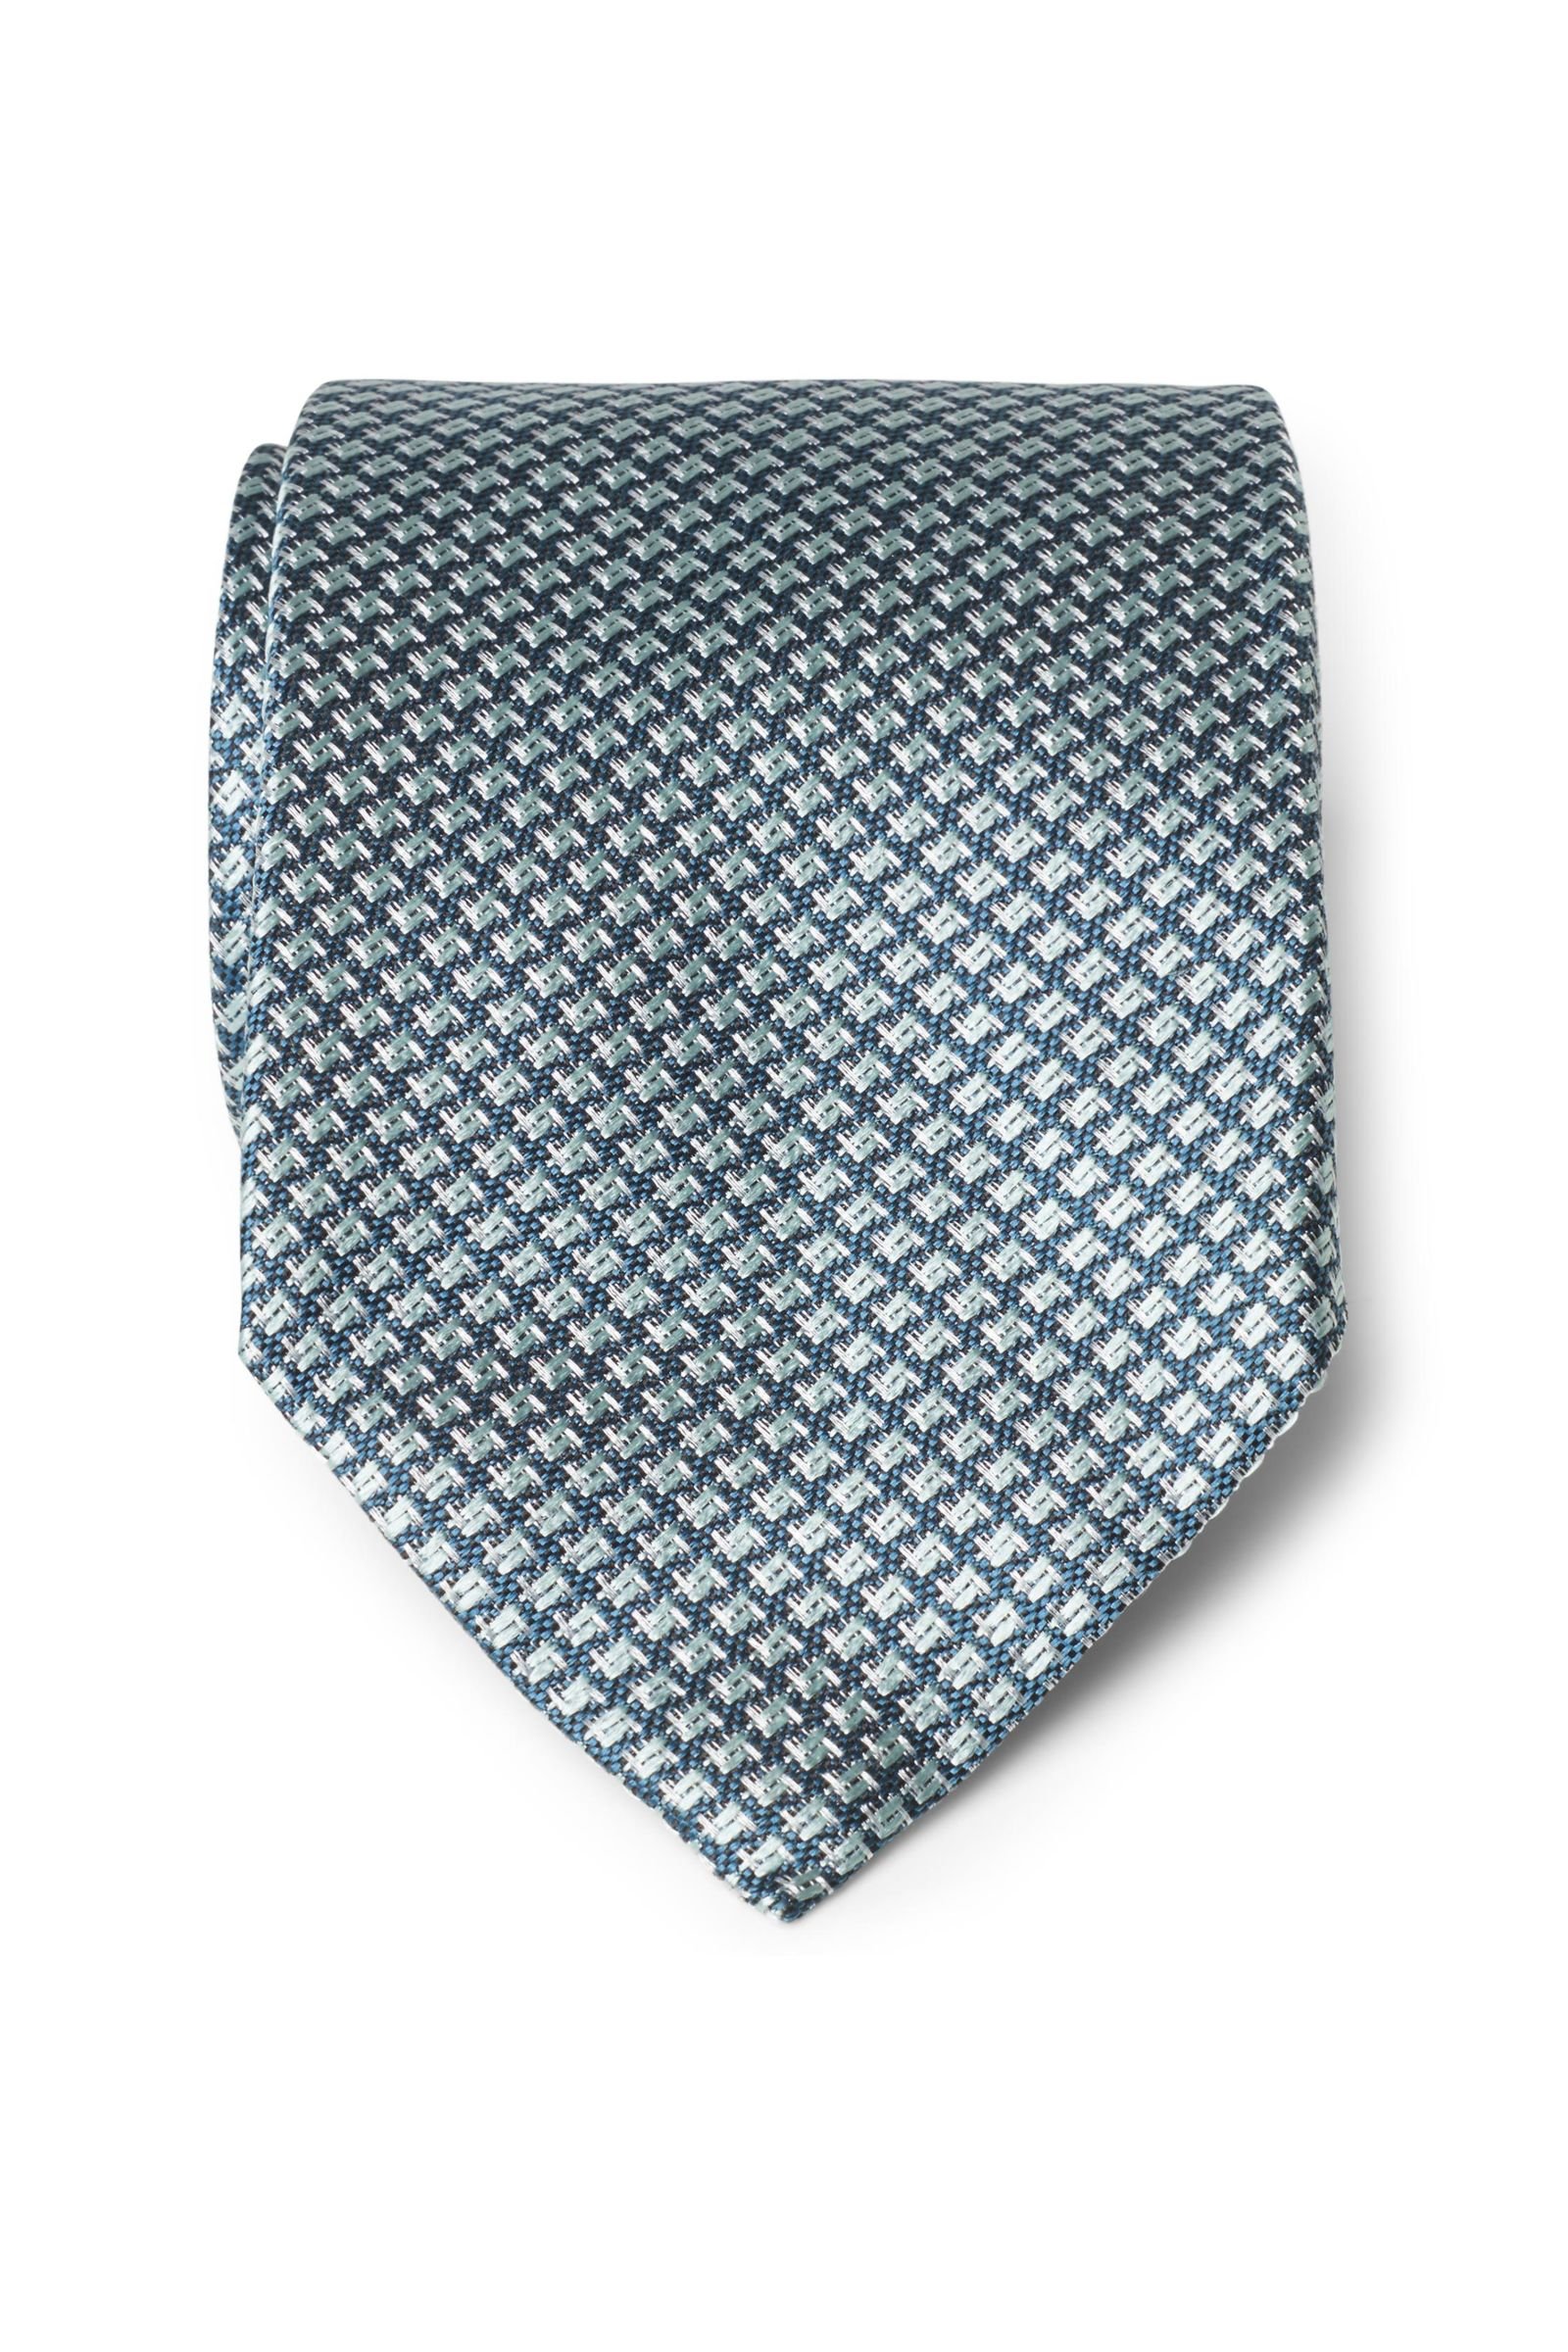 Silk tie teal patterned